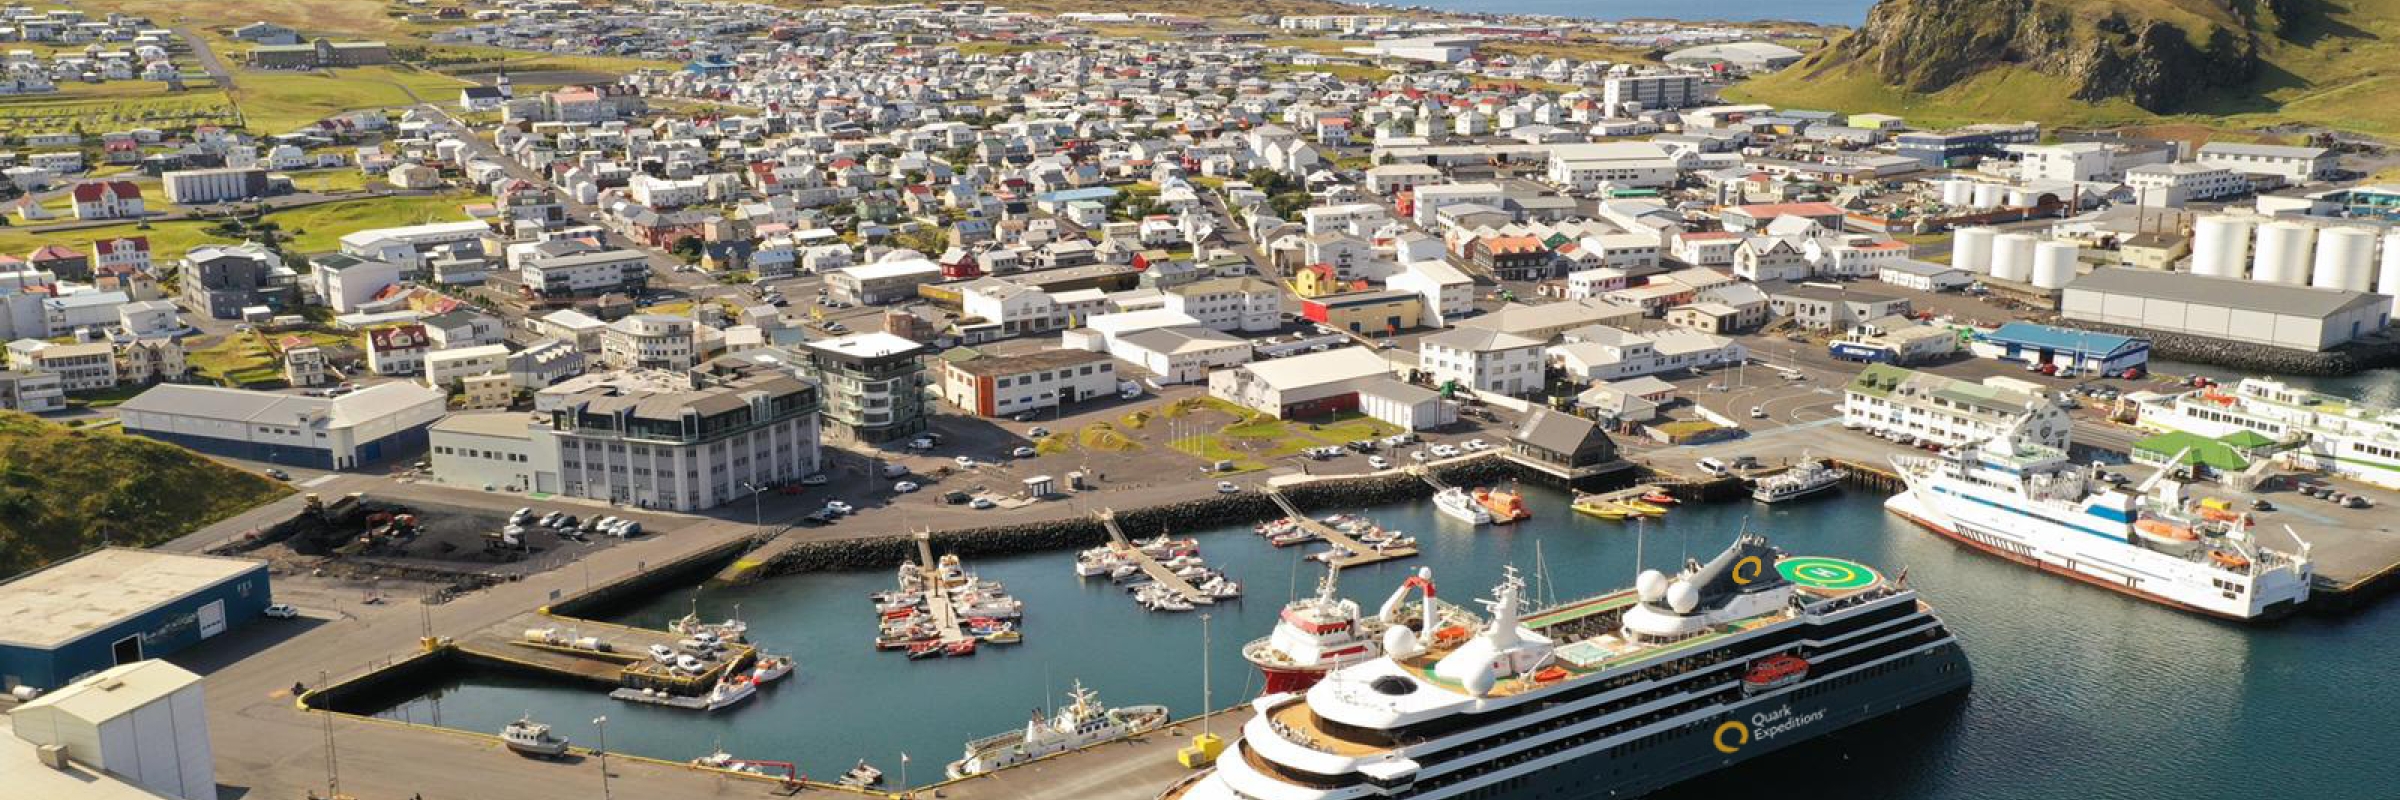 世界探索号”停靠在冰岛雷克港口